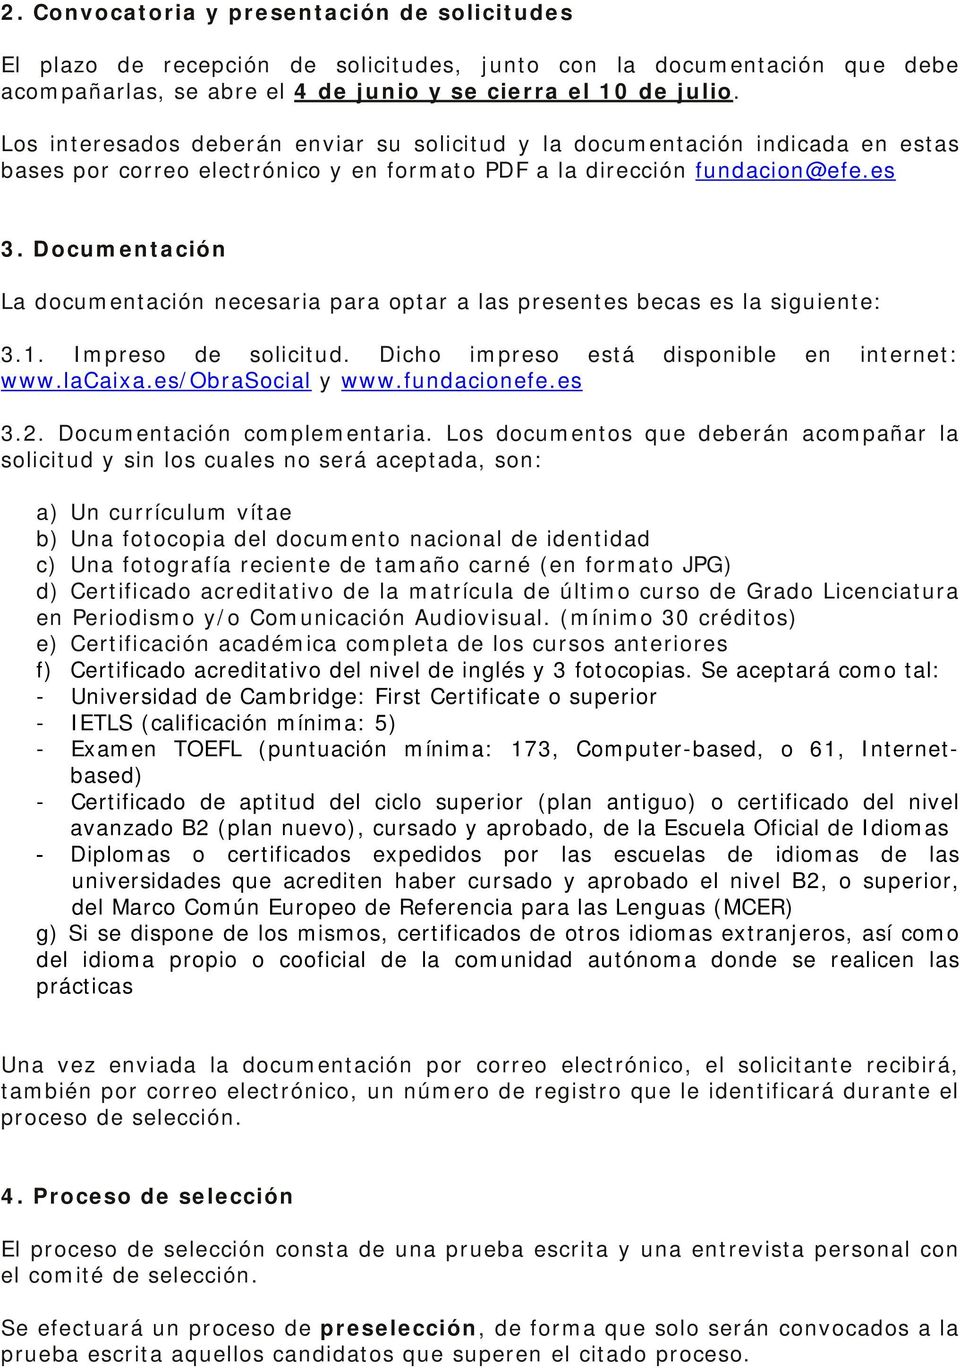 Documentación La documentación necesaria para optar a las presentes becas es la siguiente: 3.1. Impreso de solicitud. Dicho impreso está disponible en internet: www.lacaixa.es/obrasocial y www.